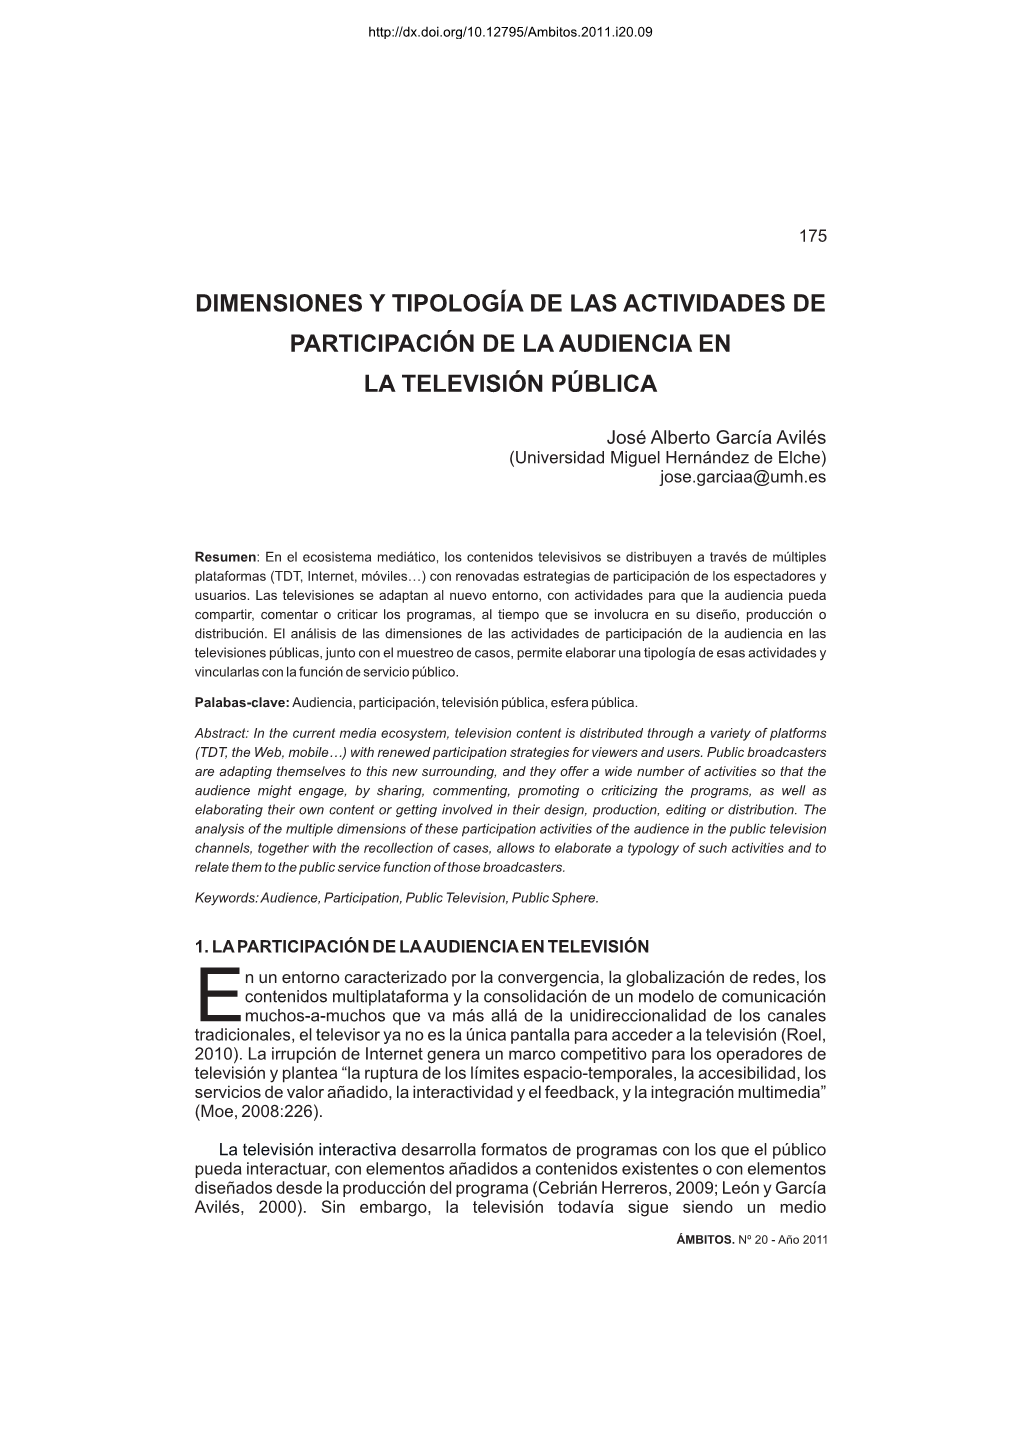 Dimensiones Y Tipología De Las Actividades De Participación De La Audiencia En La Televisión Pública